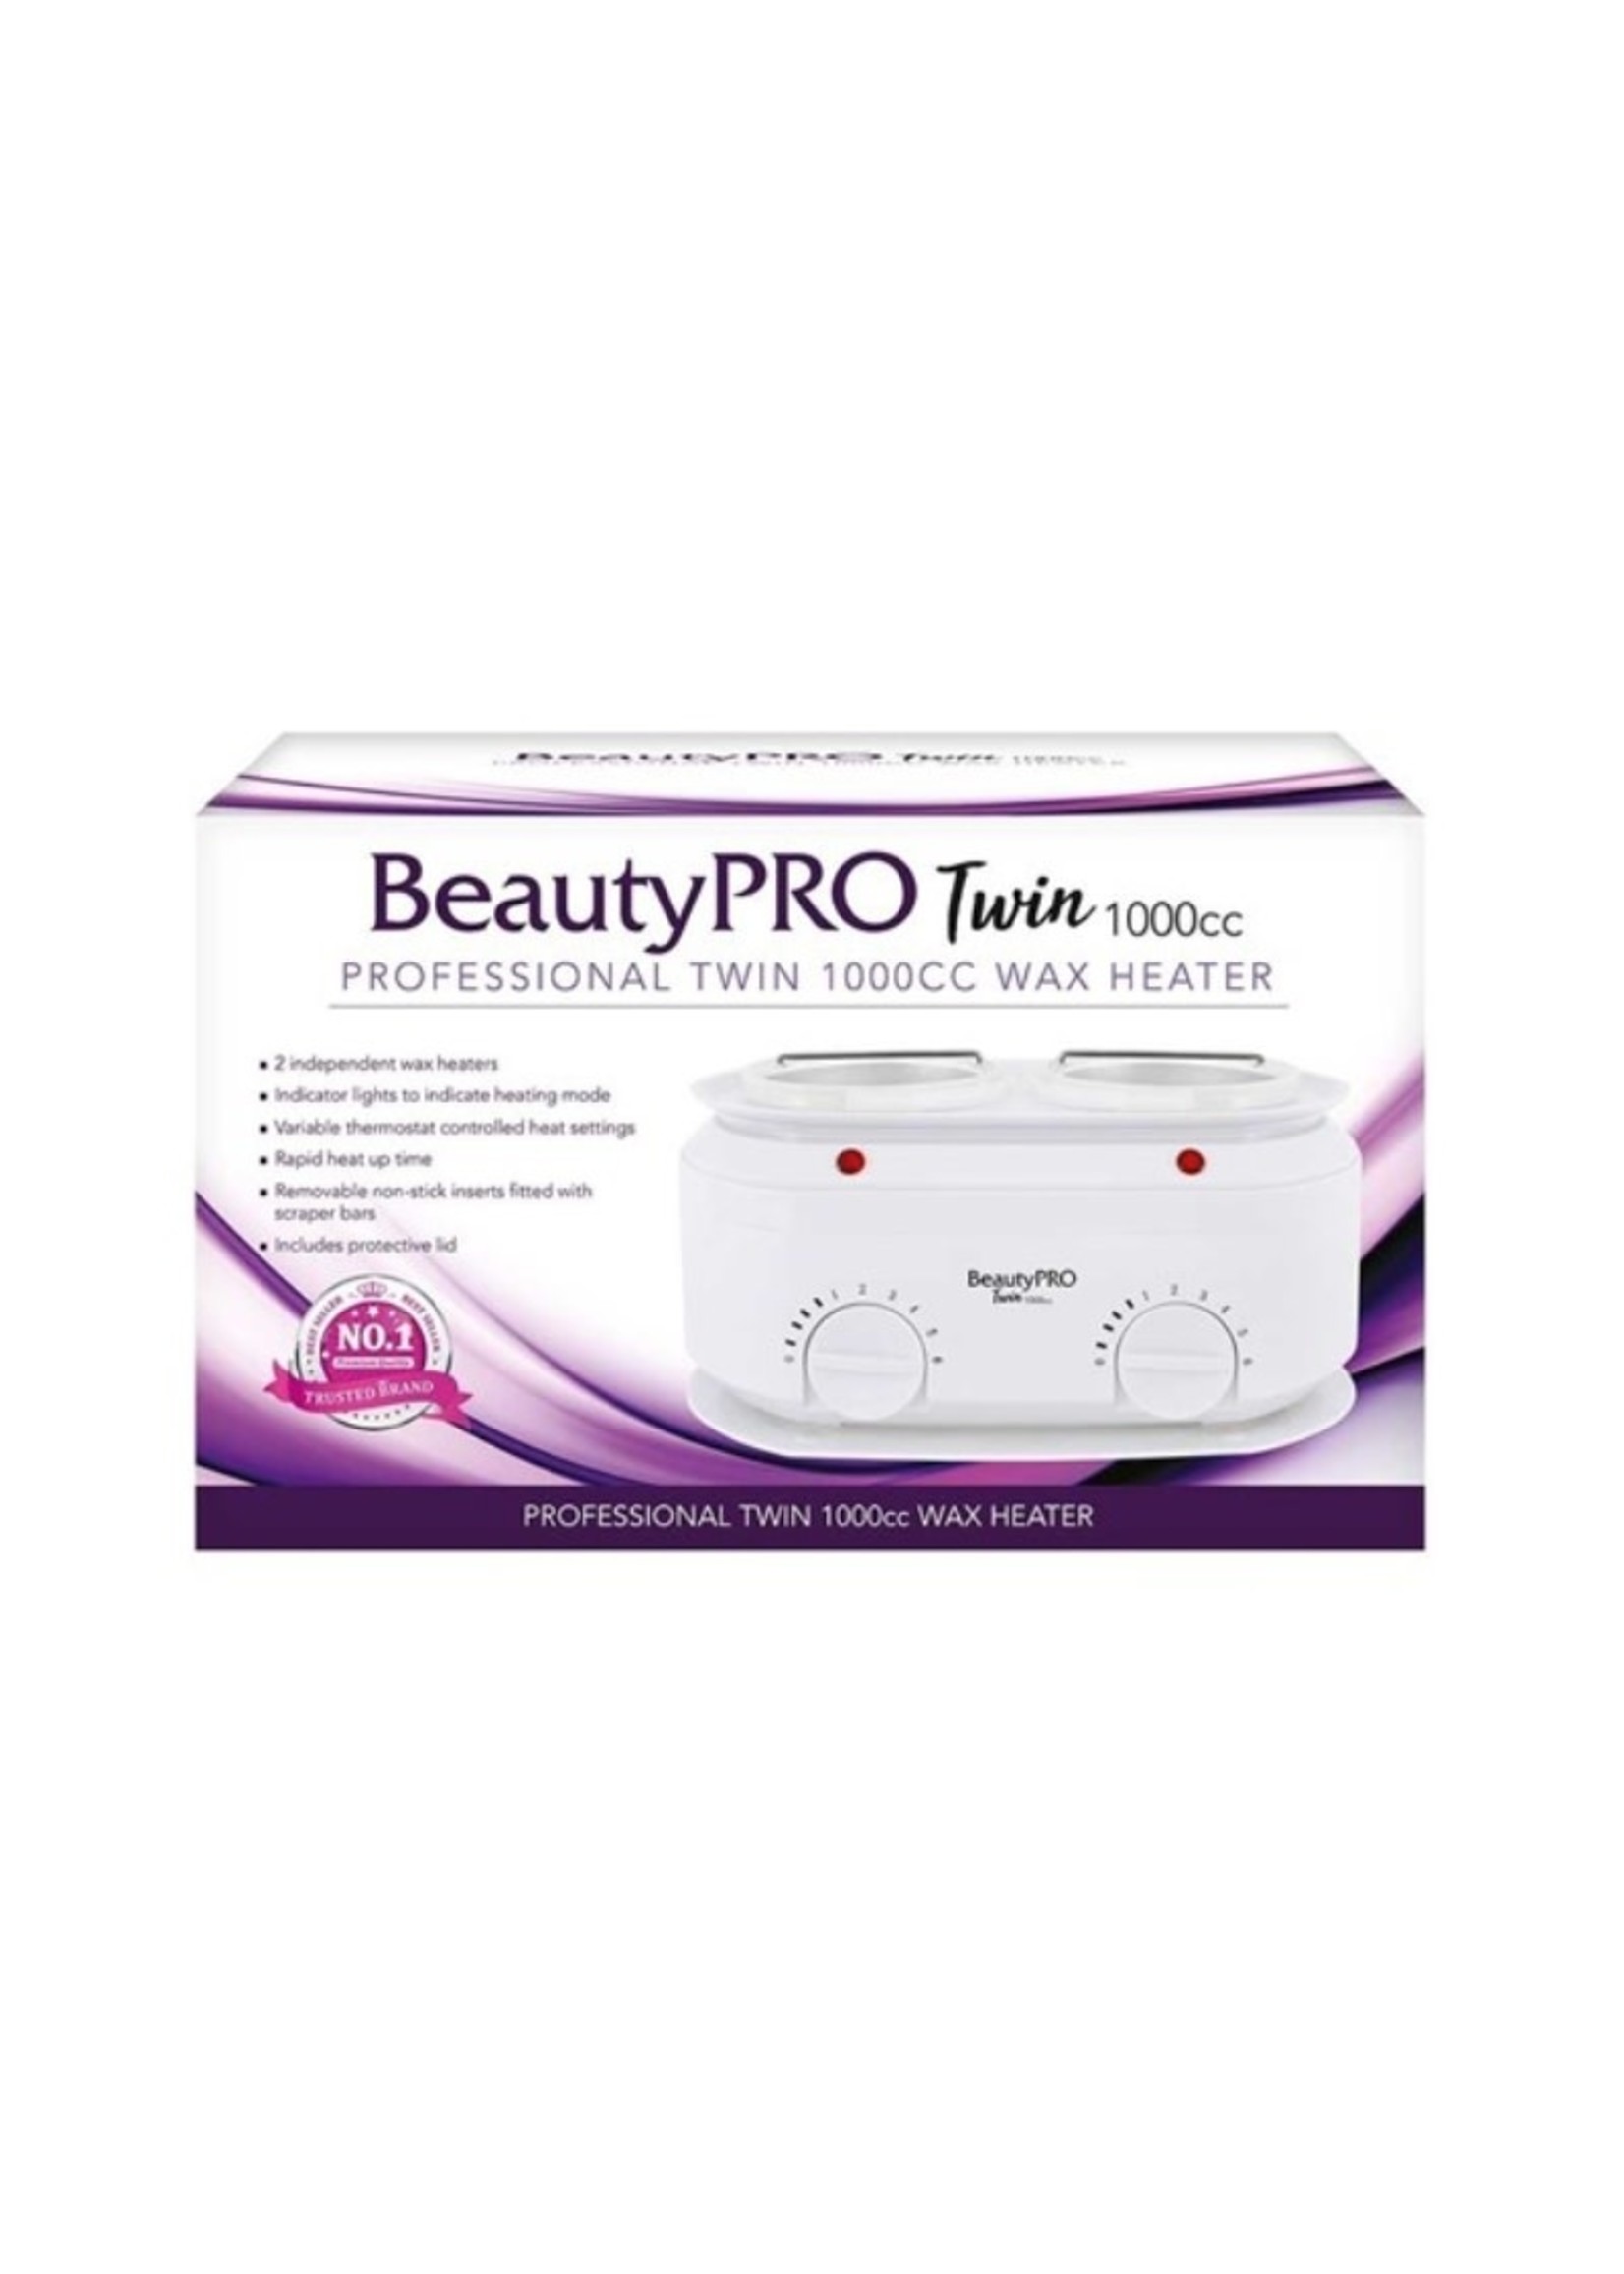 BeautyPRO Beautypro Twin 1000cc Wax Heater